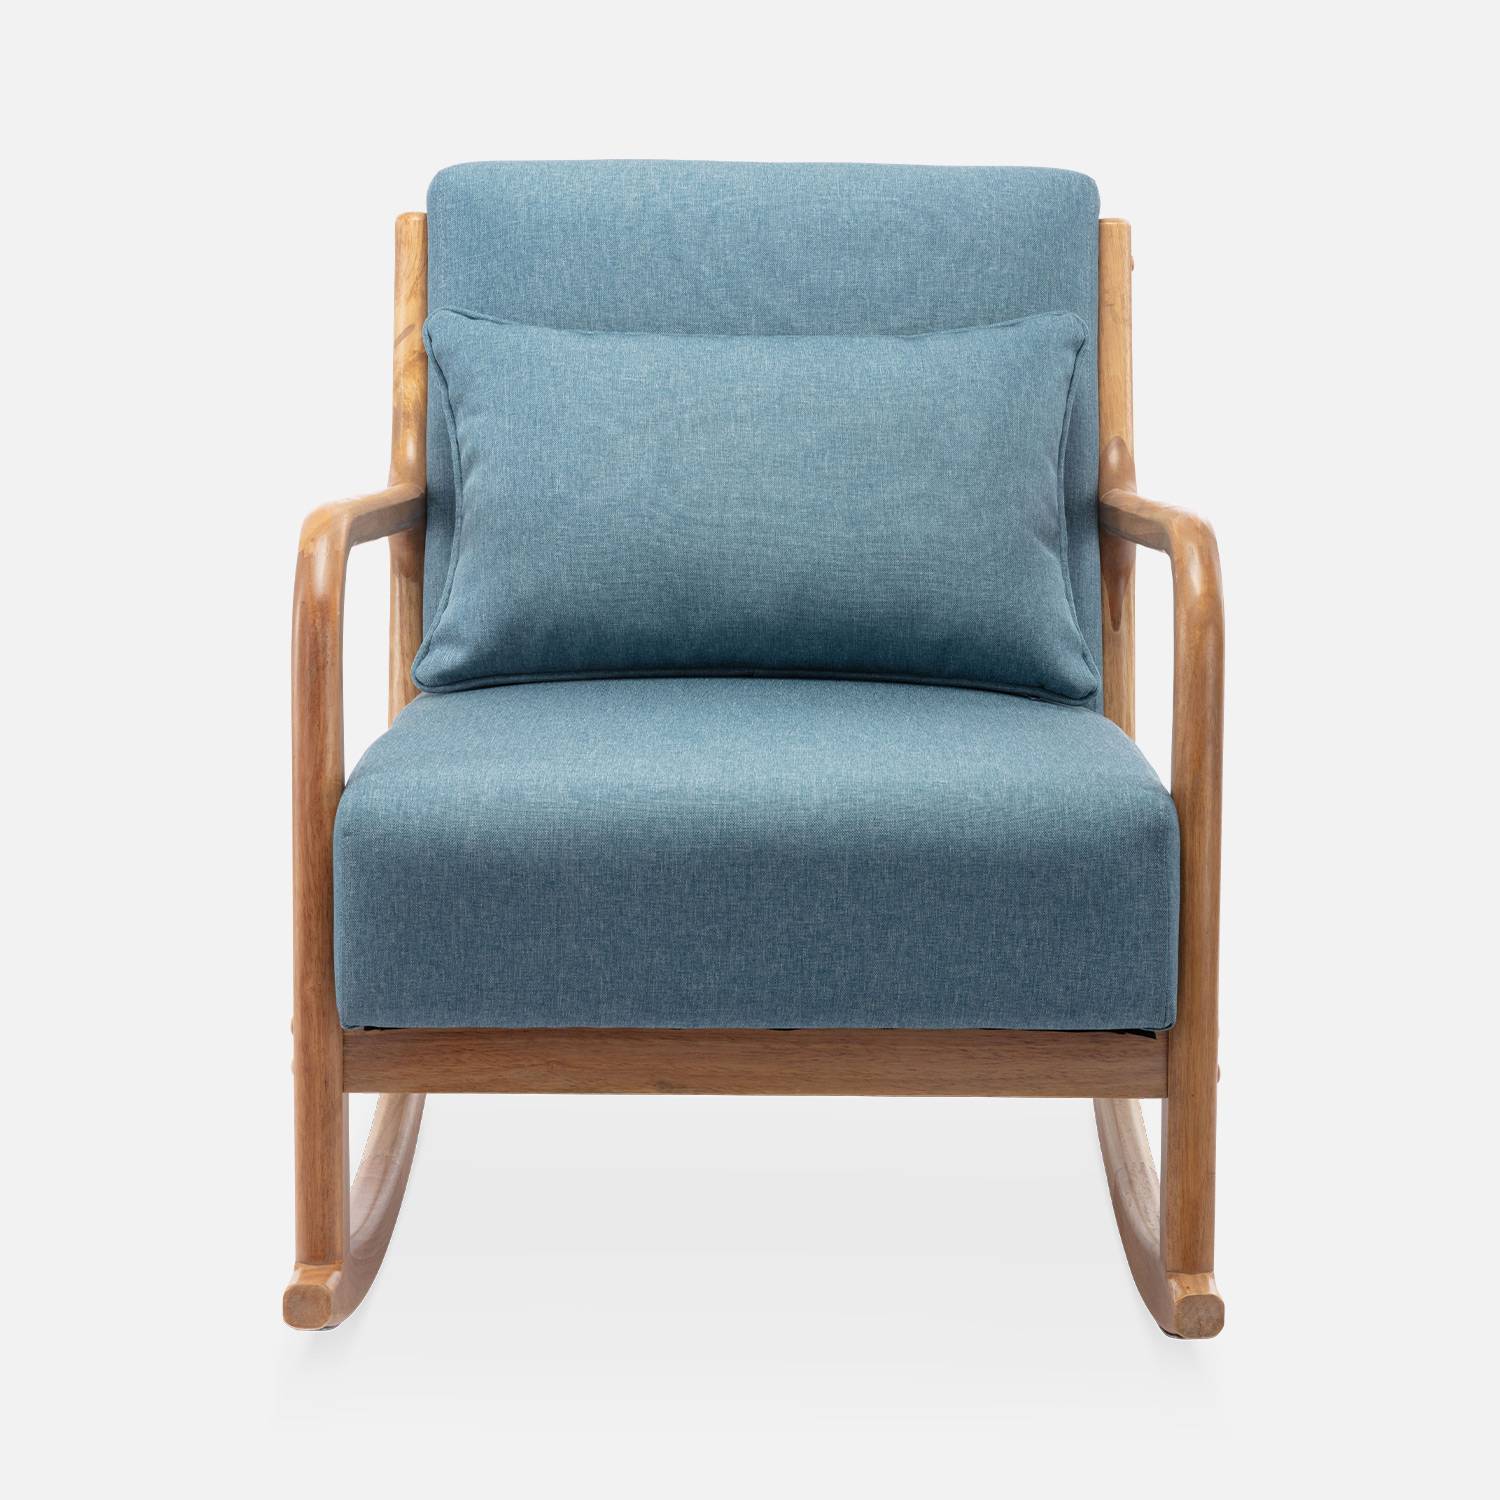 Fauteuil à bascule design en bois et tissu, 1 place, rocking chair scandinave  Photo4